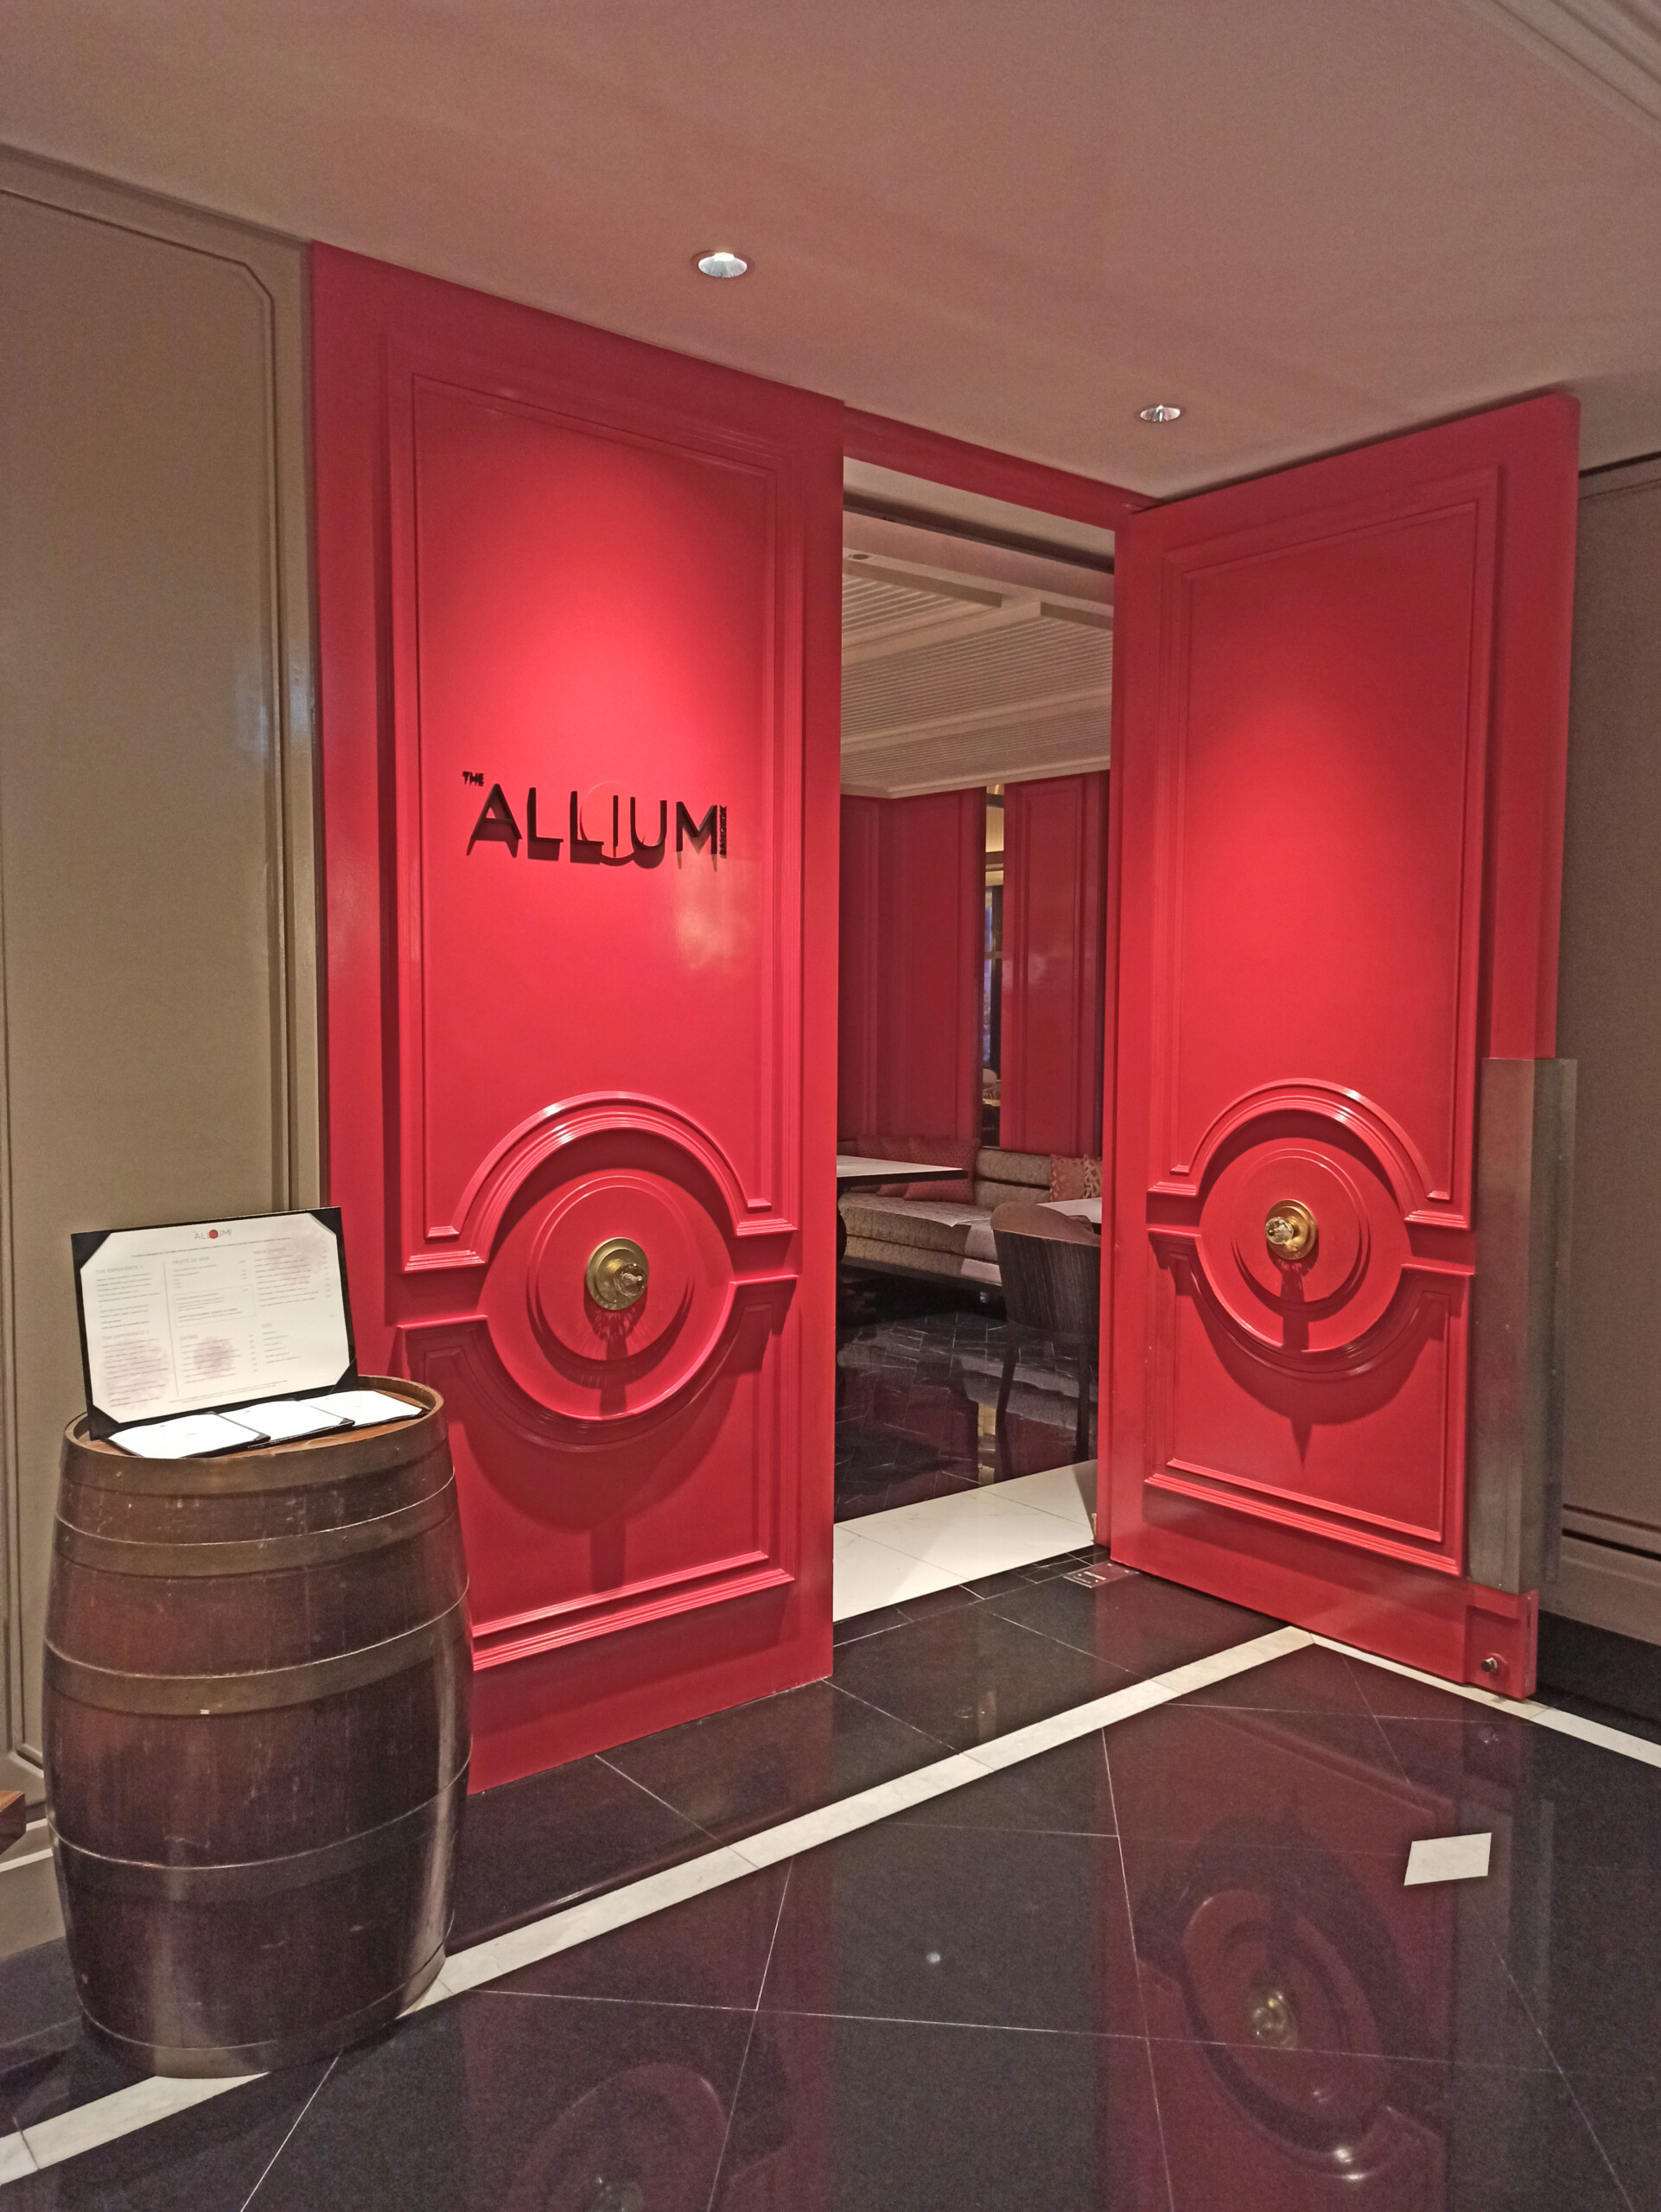 The Allium Restaurant Entrance